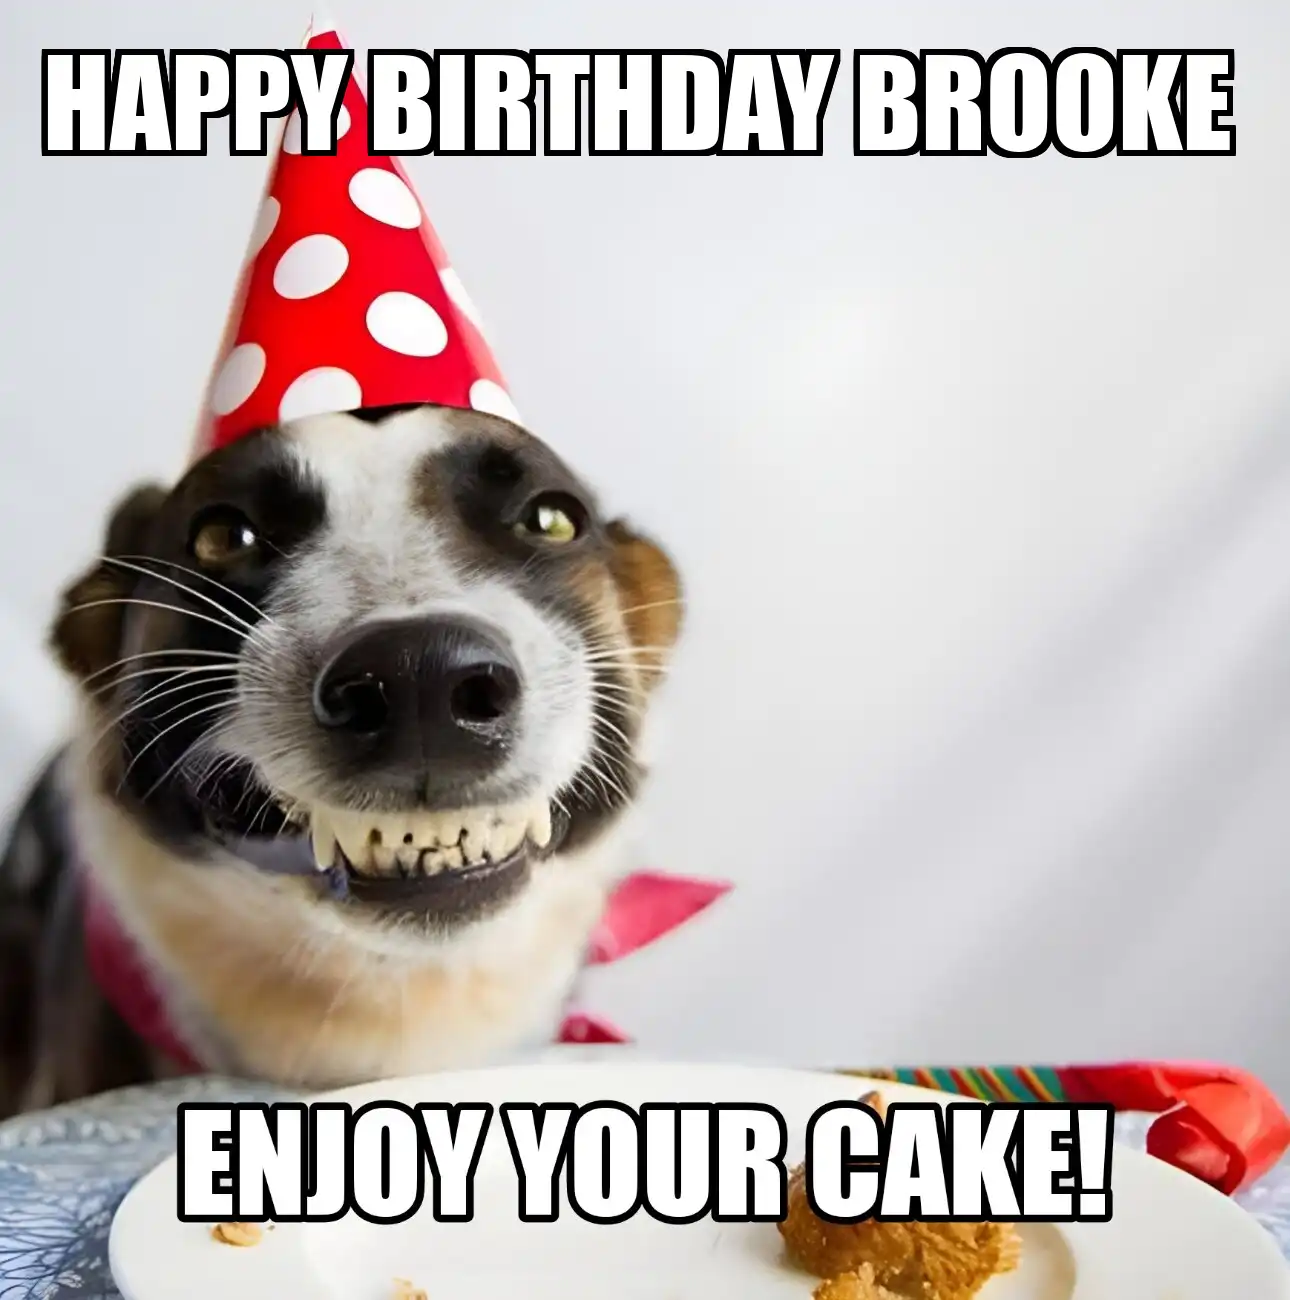 Happy Birthday Brooke Enjoy Your Cake Dog Meme